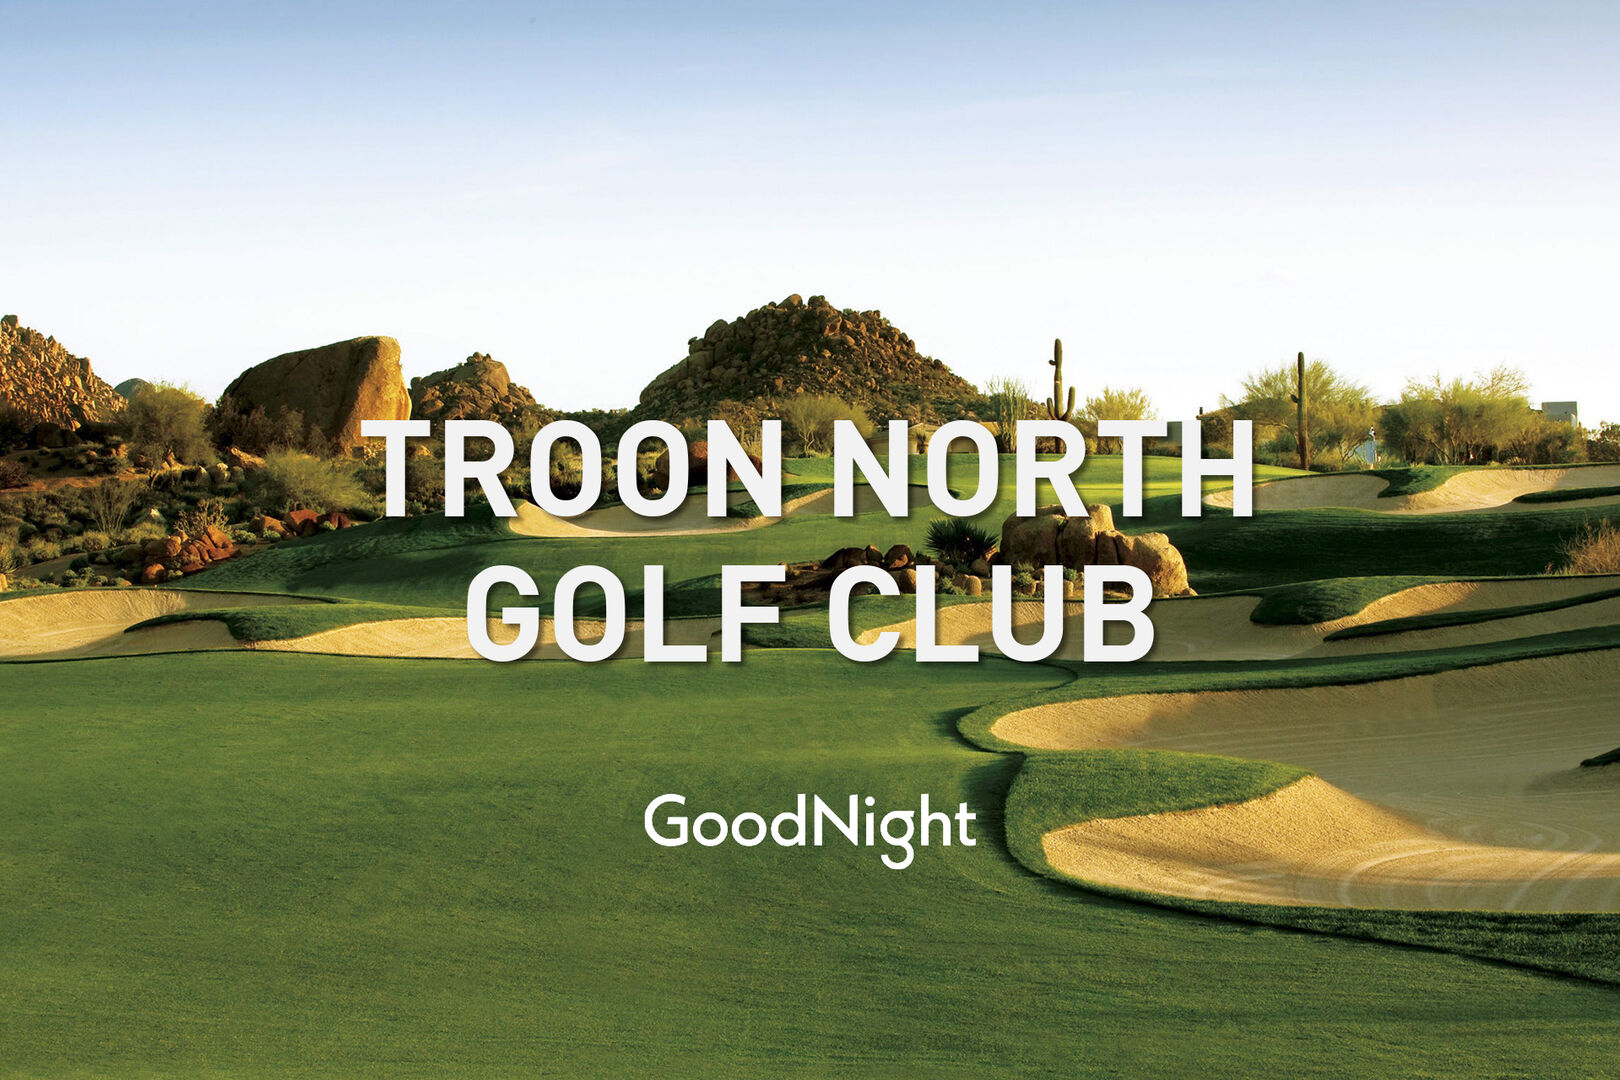 16 mins: Troon North Golf Club